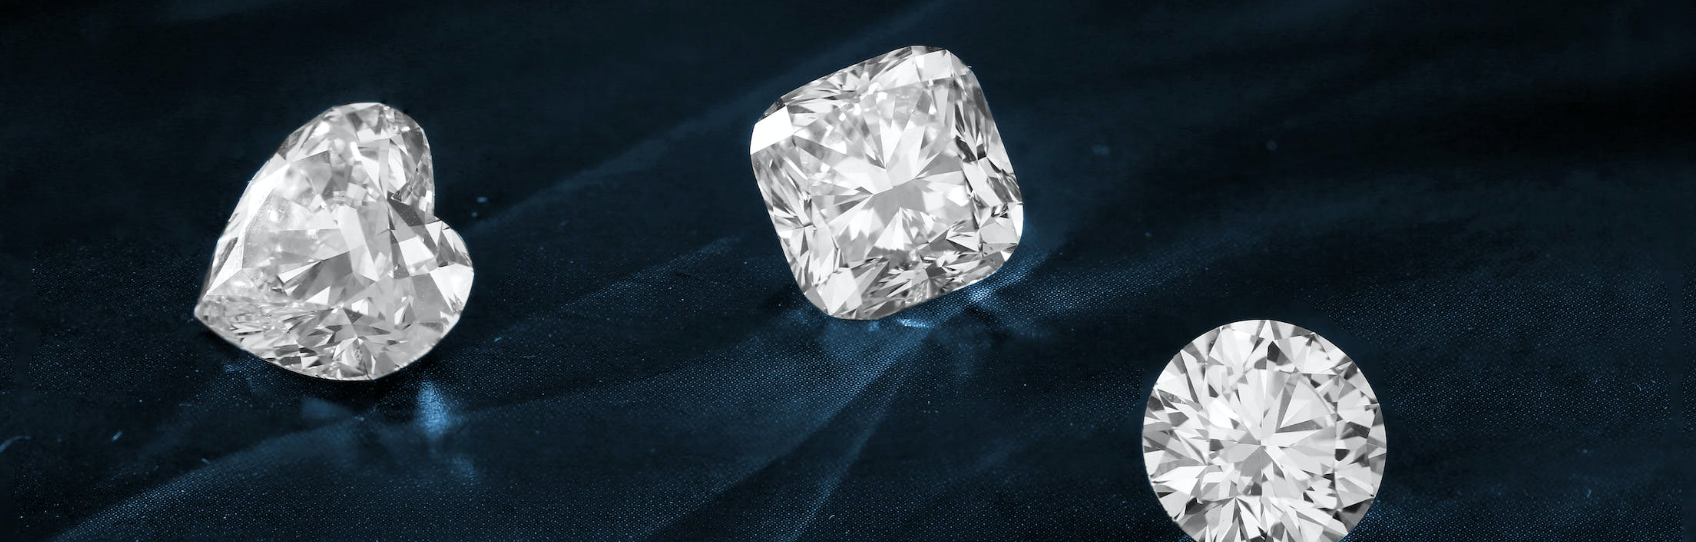 Le diamant créé en laboratoire est-il un vrai diamant ?